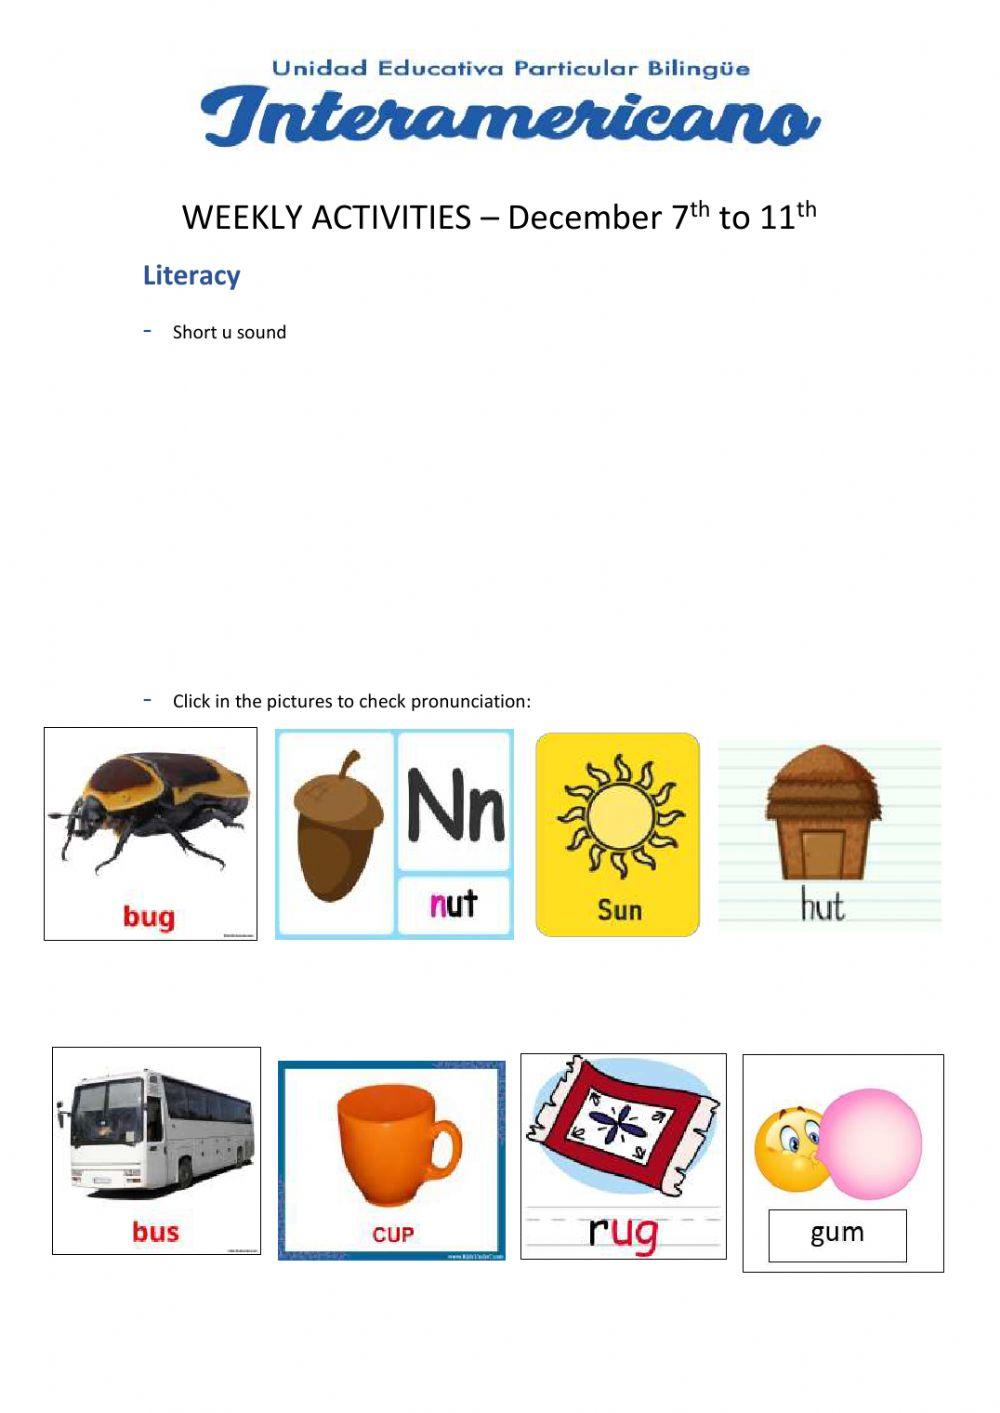 Weekly activities - Preparatory - Week 28